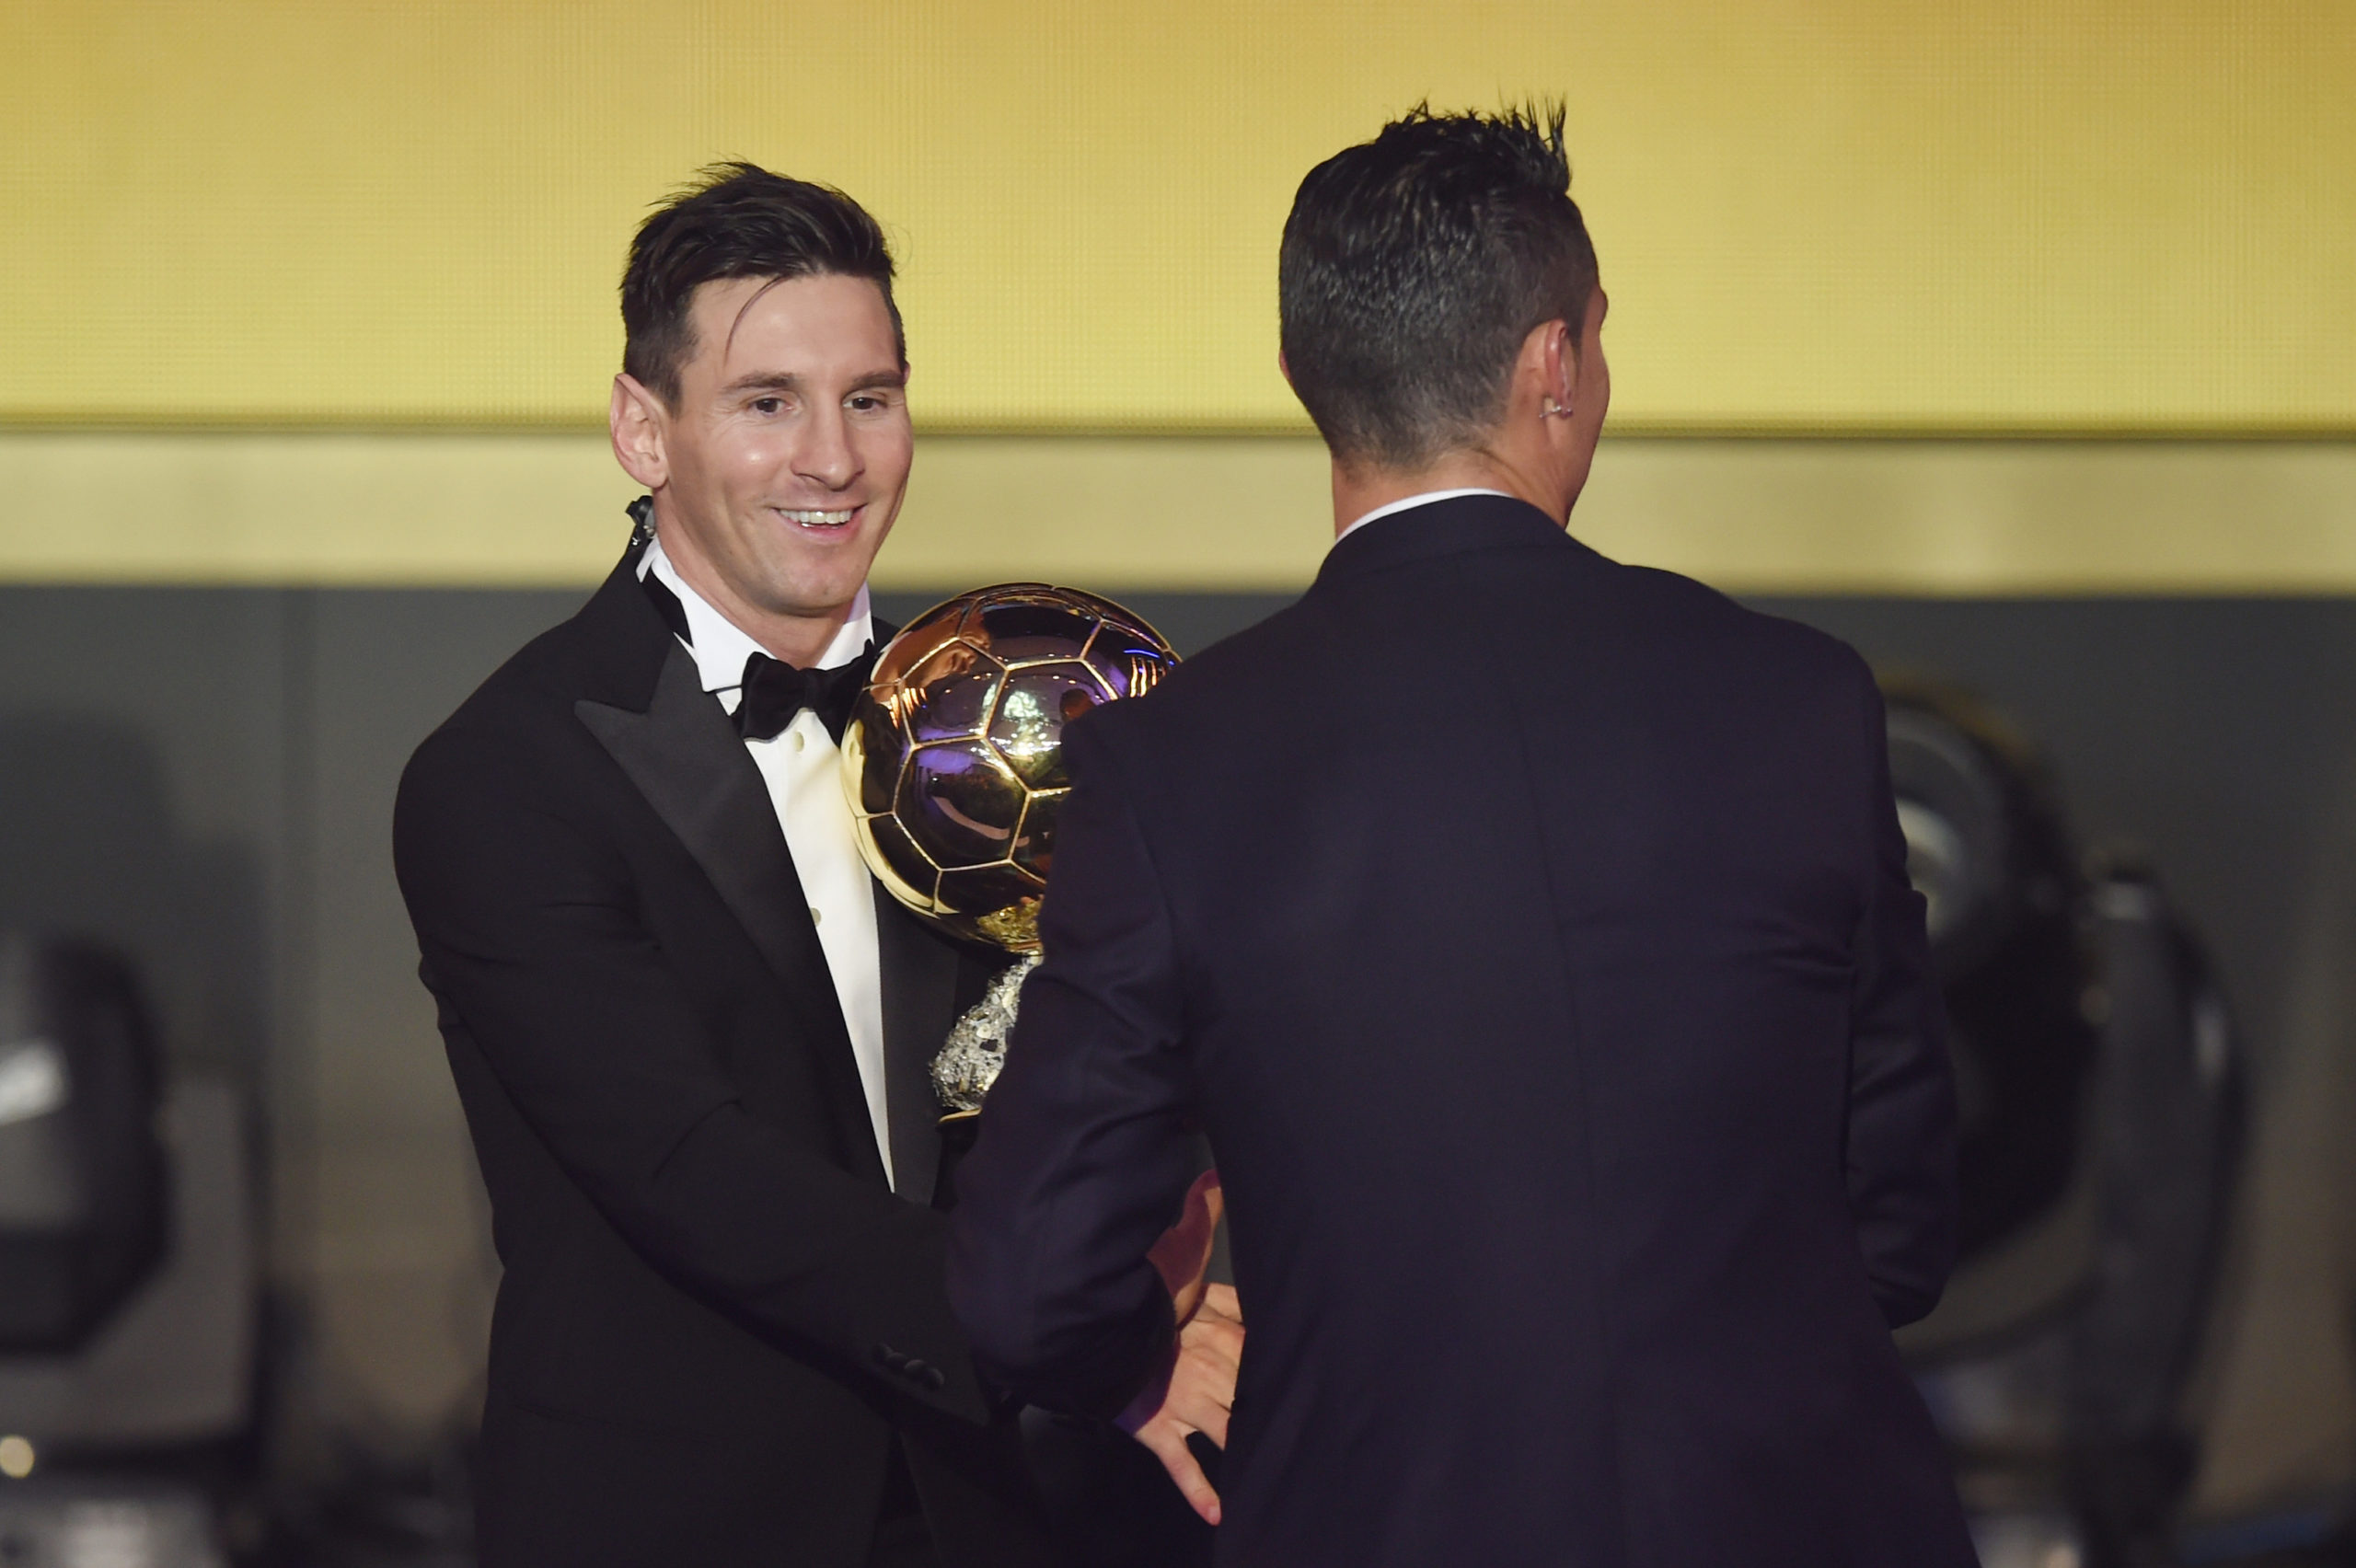 RIVALS: Ballon d’or winner Lionel Messi, left, is congratulated by Cristiano Ronaldo.